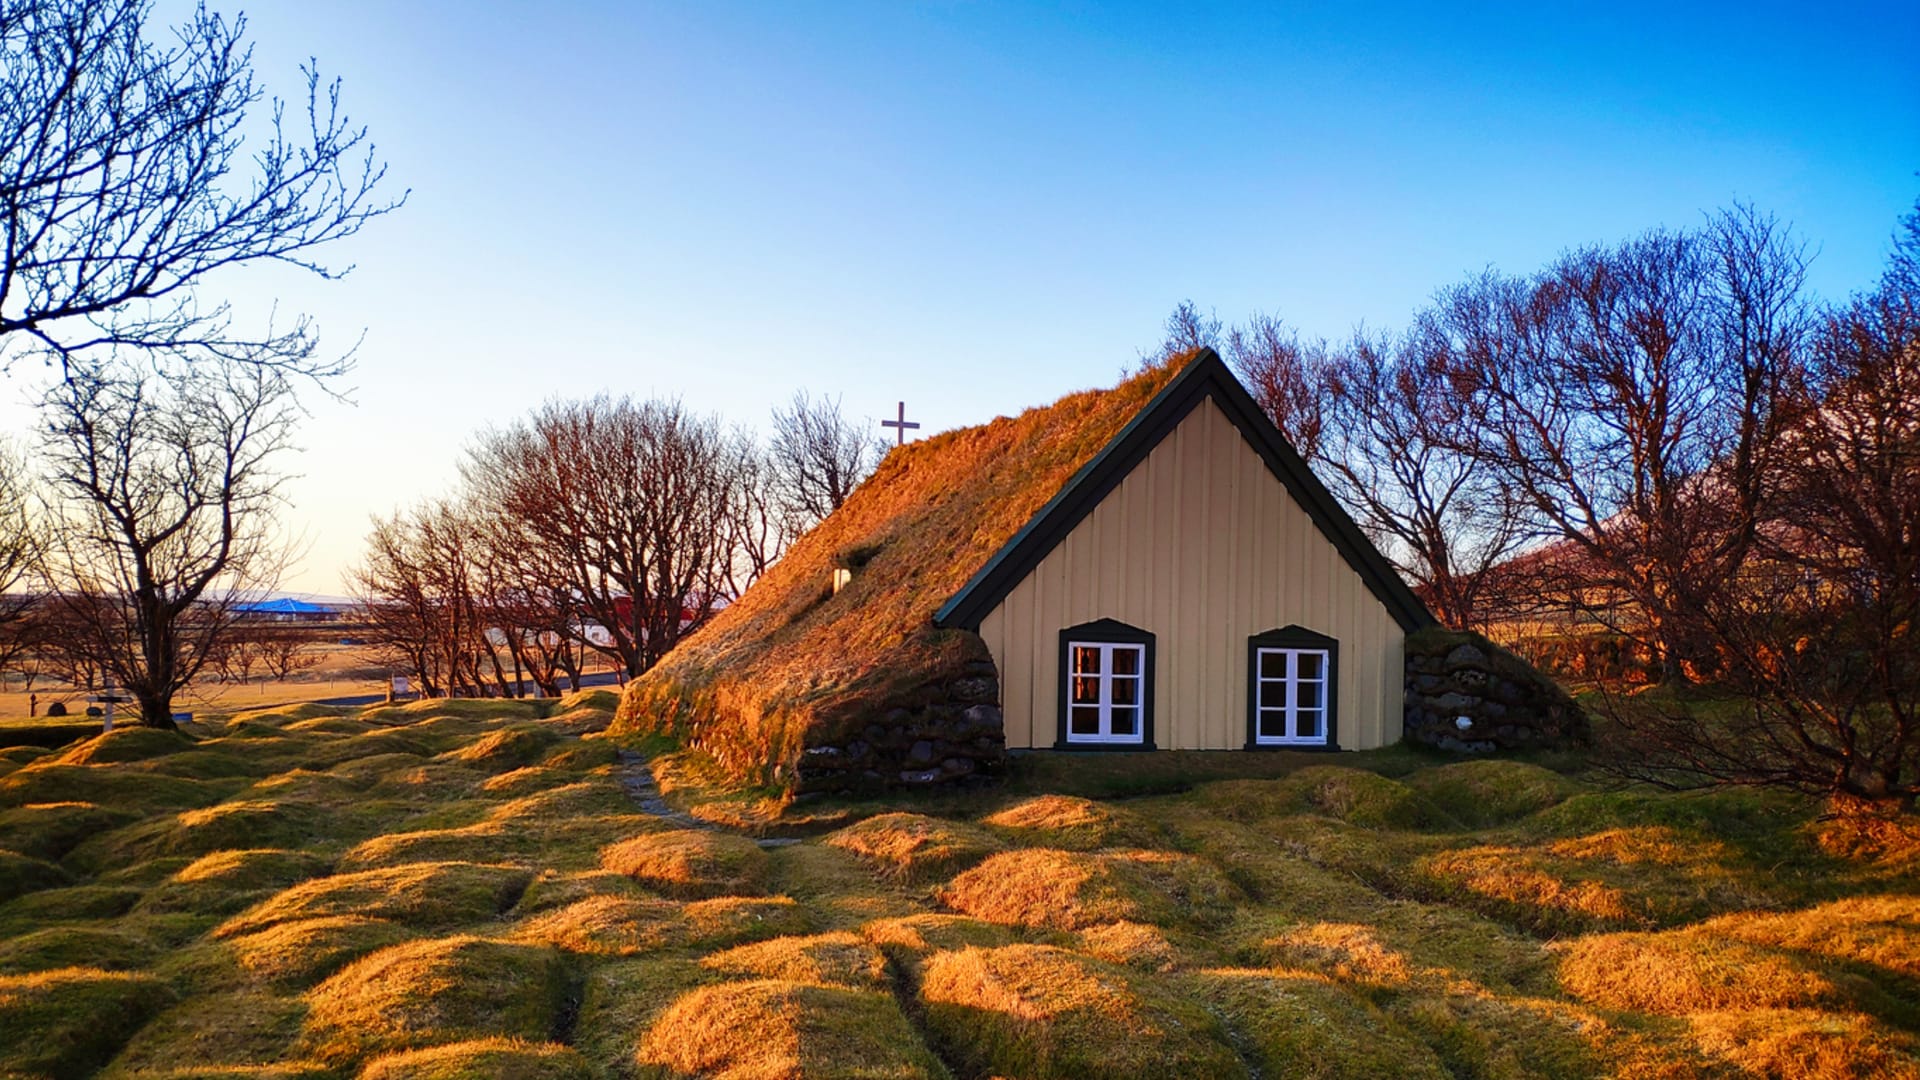 Domek se zelenou střechou na Islandu